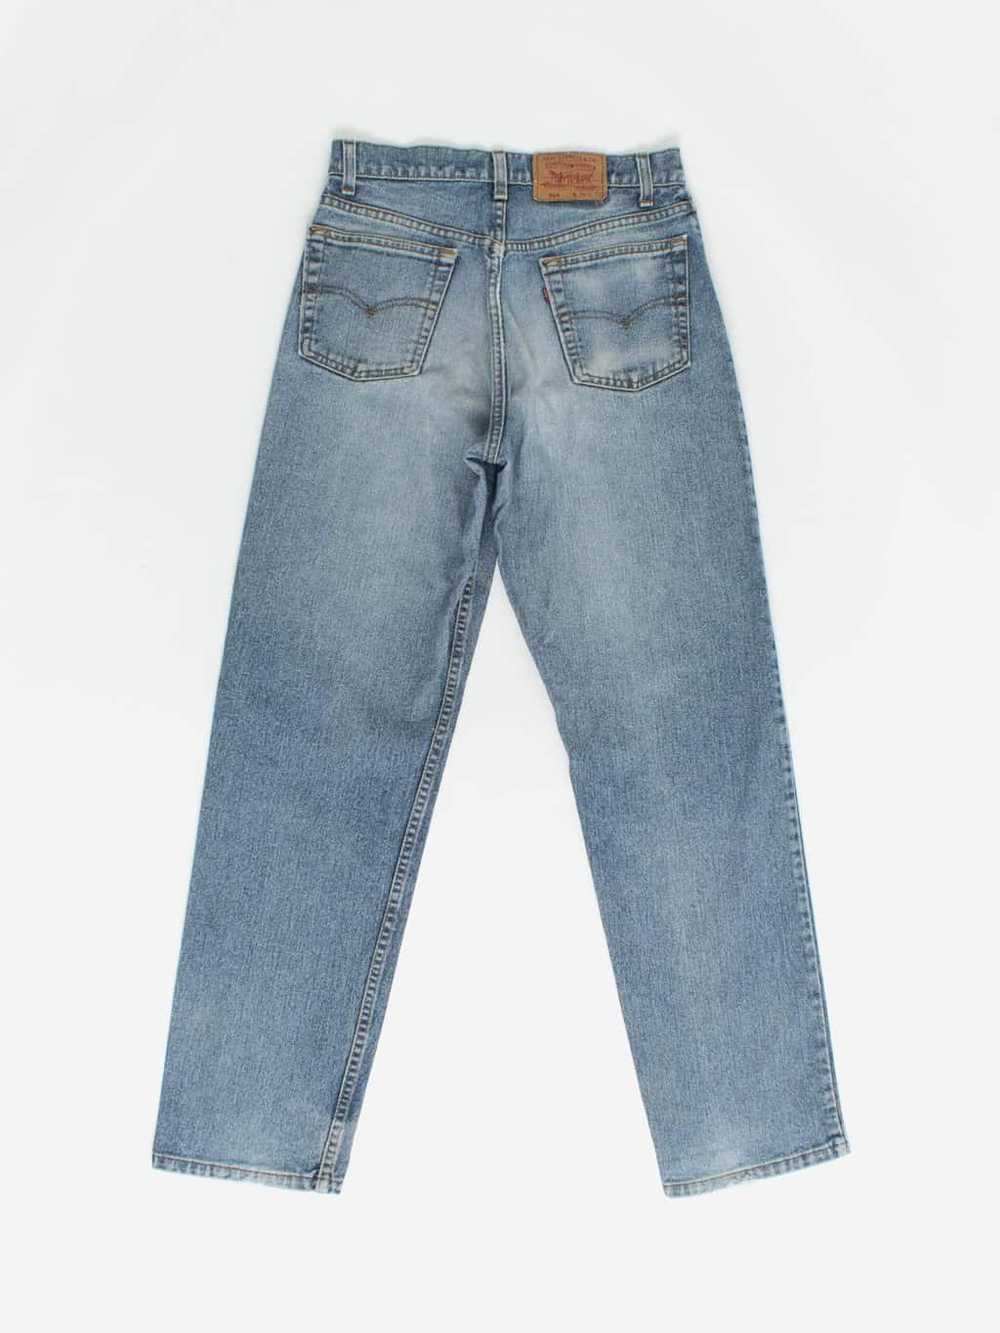 Vintage Levis 554 jeans 30 x 32 blue stonewash US… - image 3